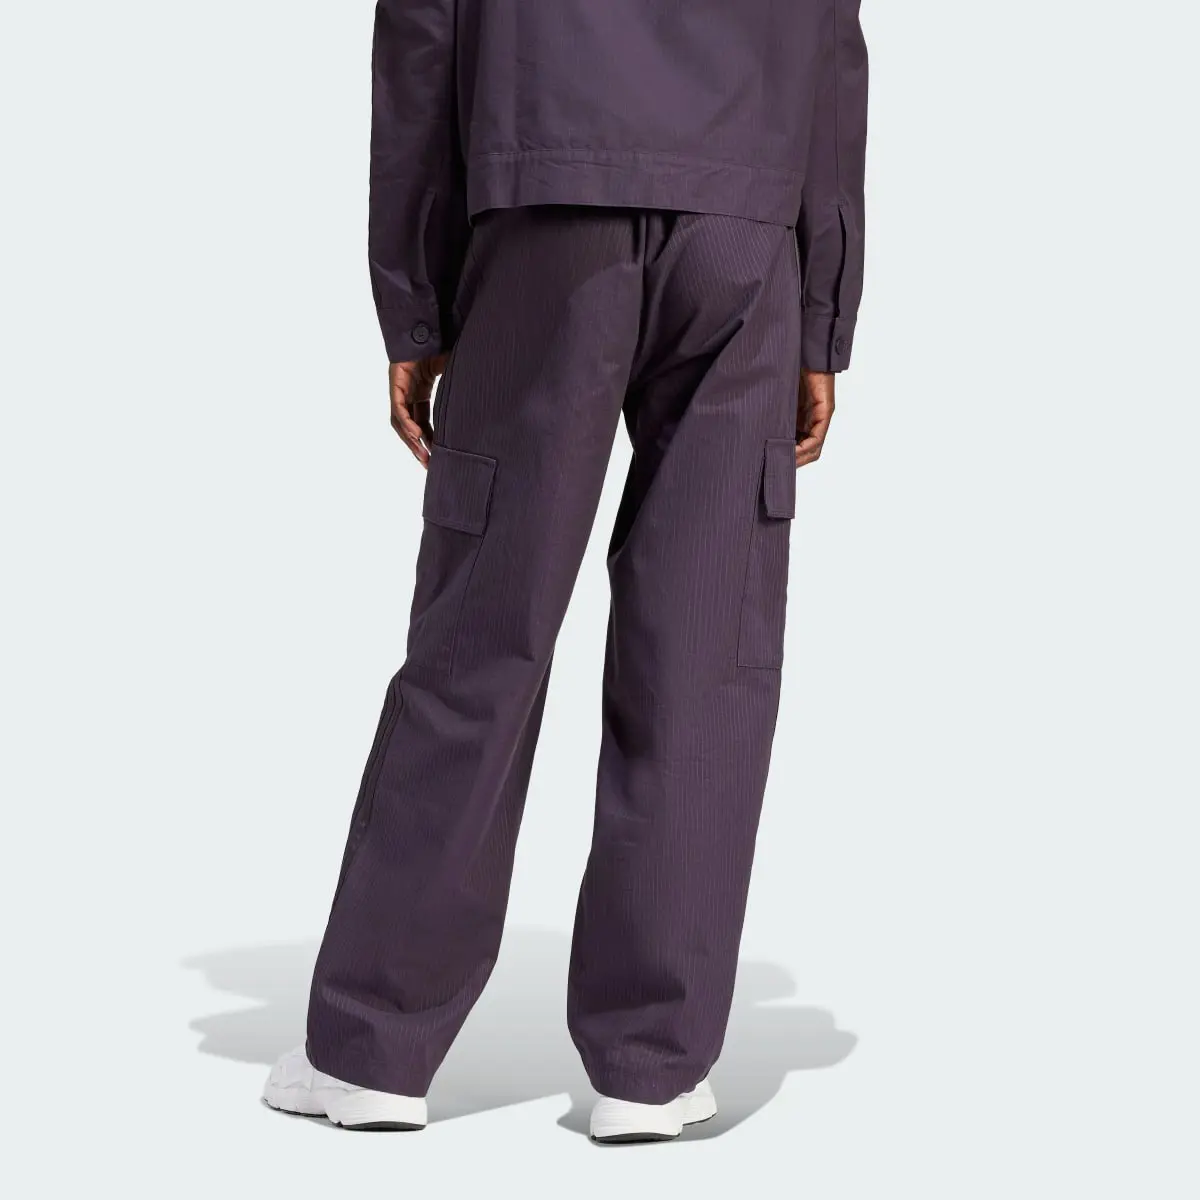 Adidas Premium Essentials Ripstop Trousers. 2